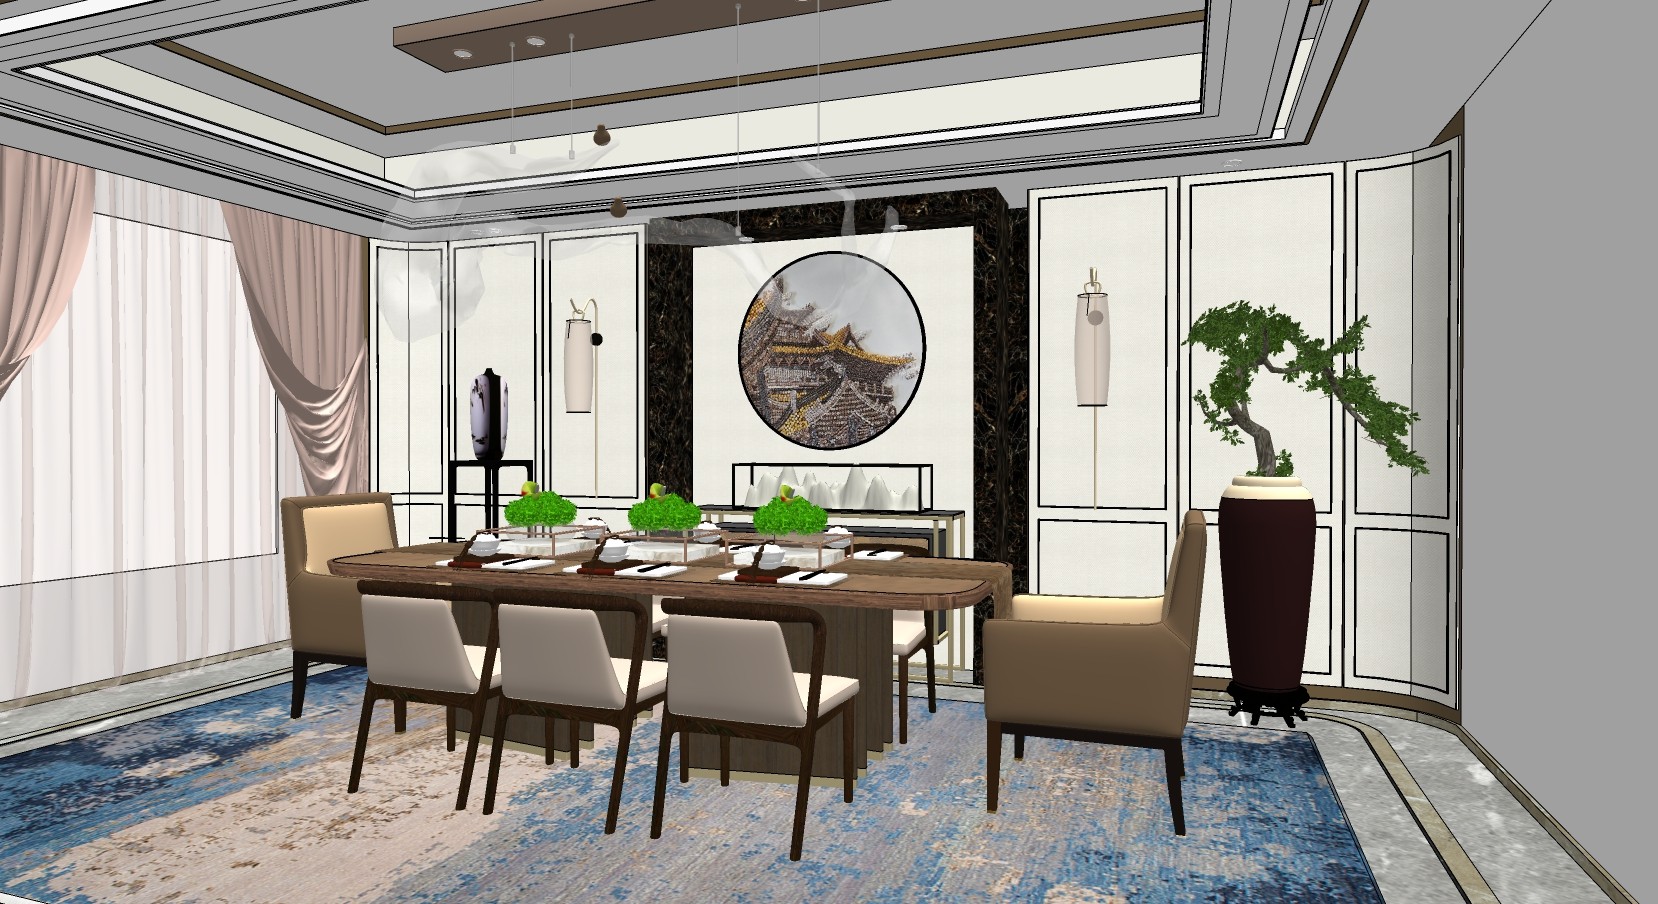 新中式餐厅I su草图模型下载